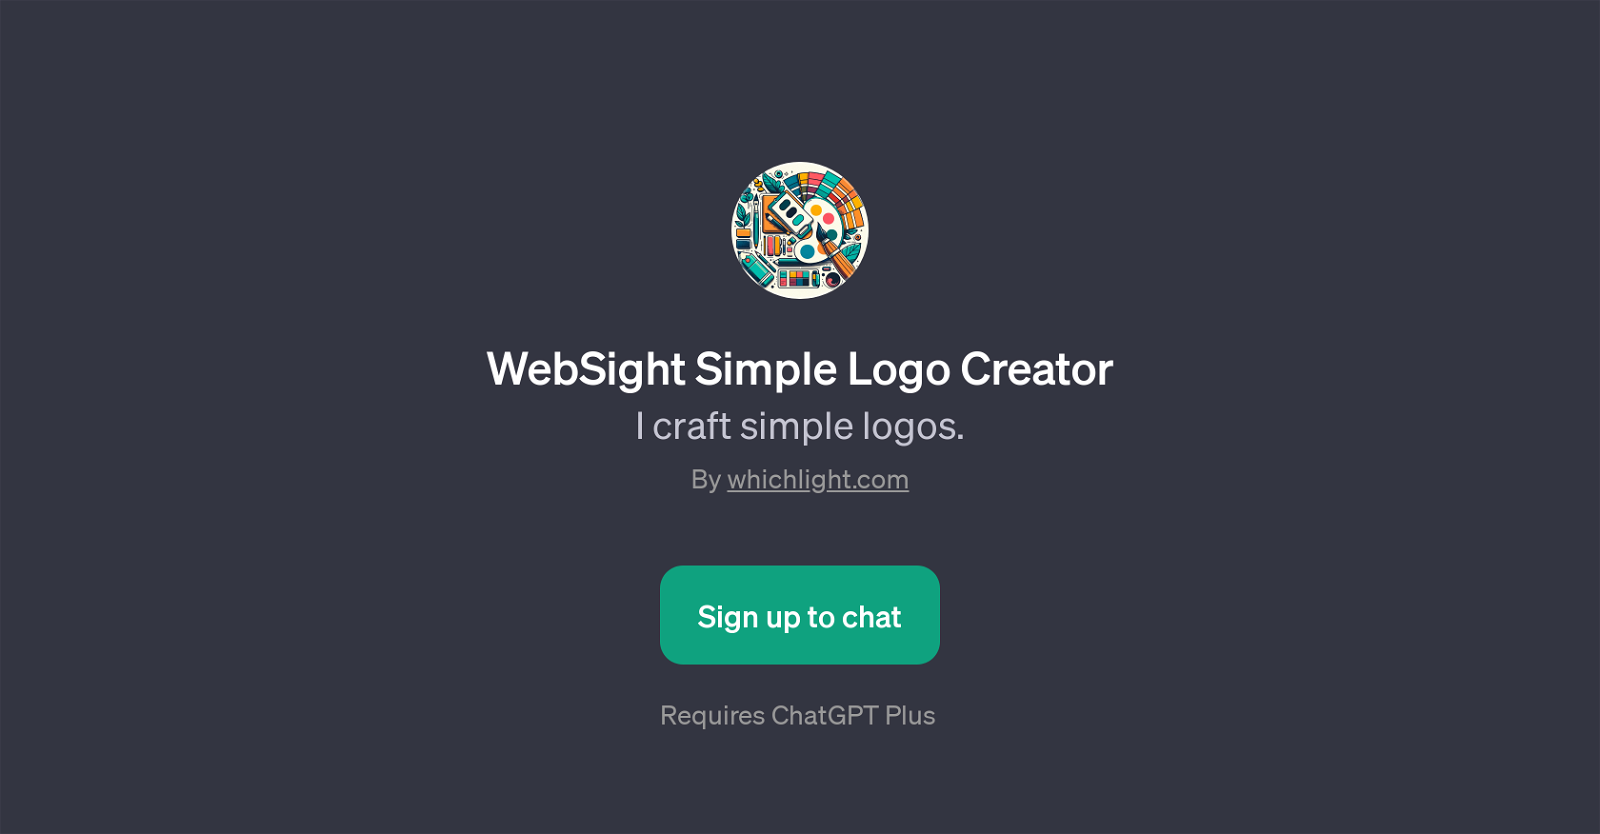 WebSight Simple Logo Creator website